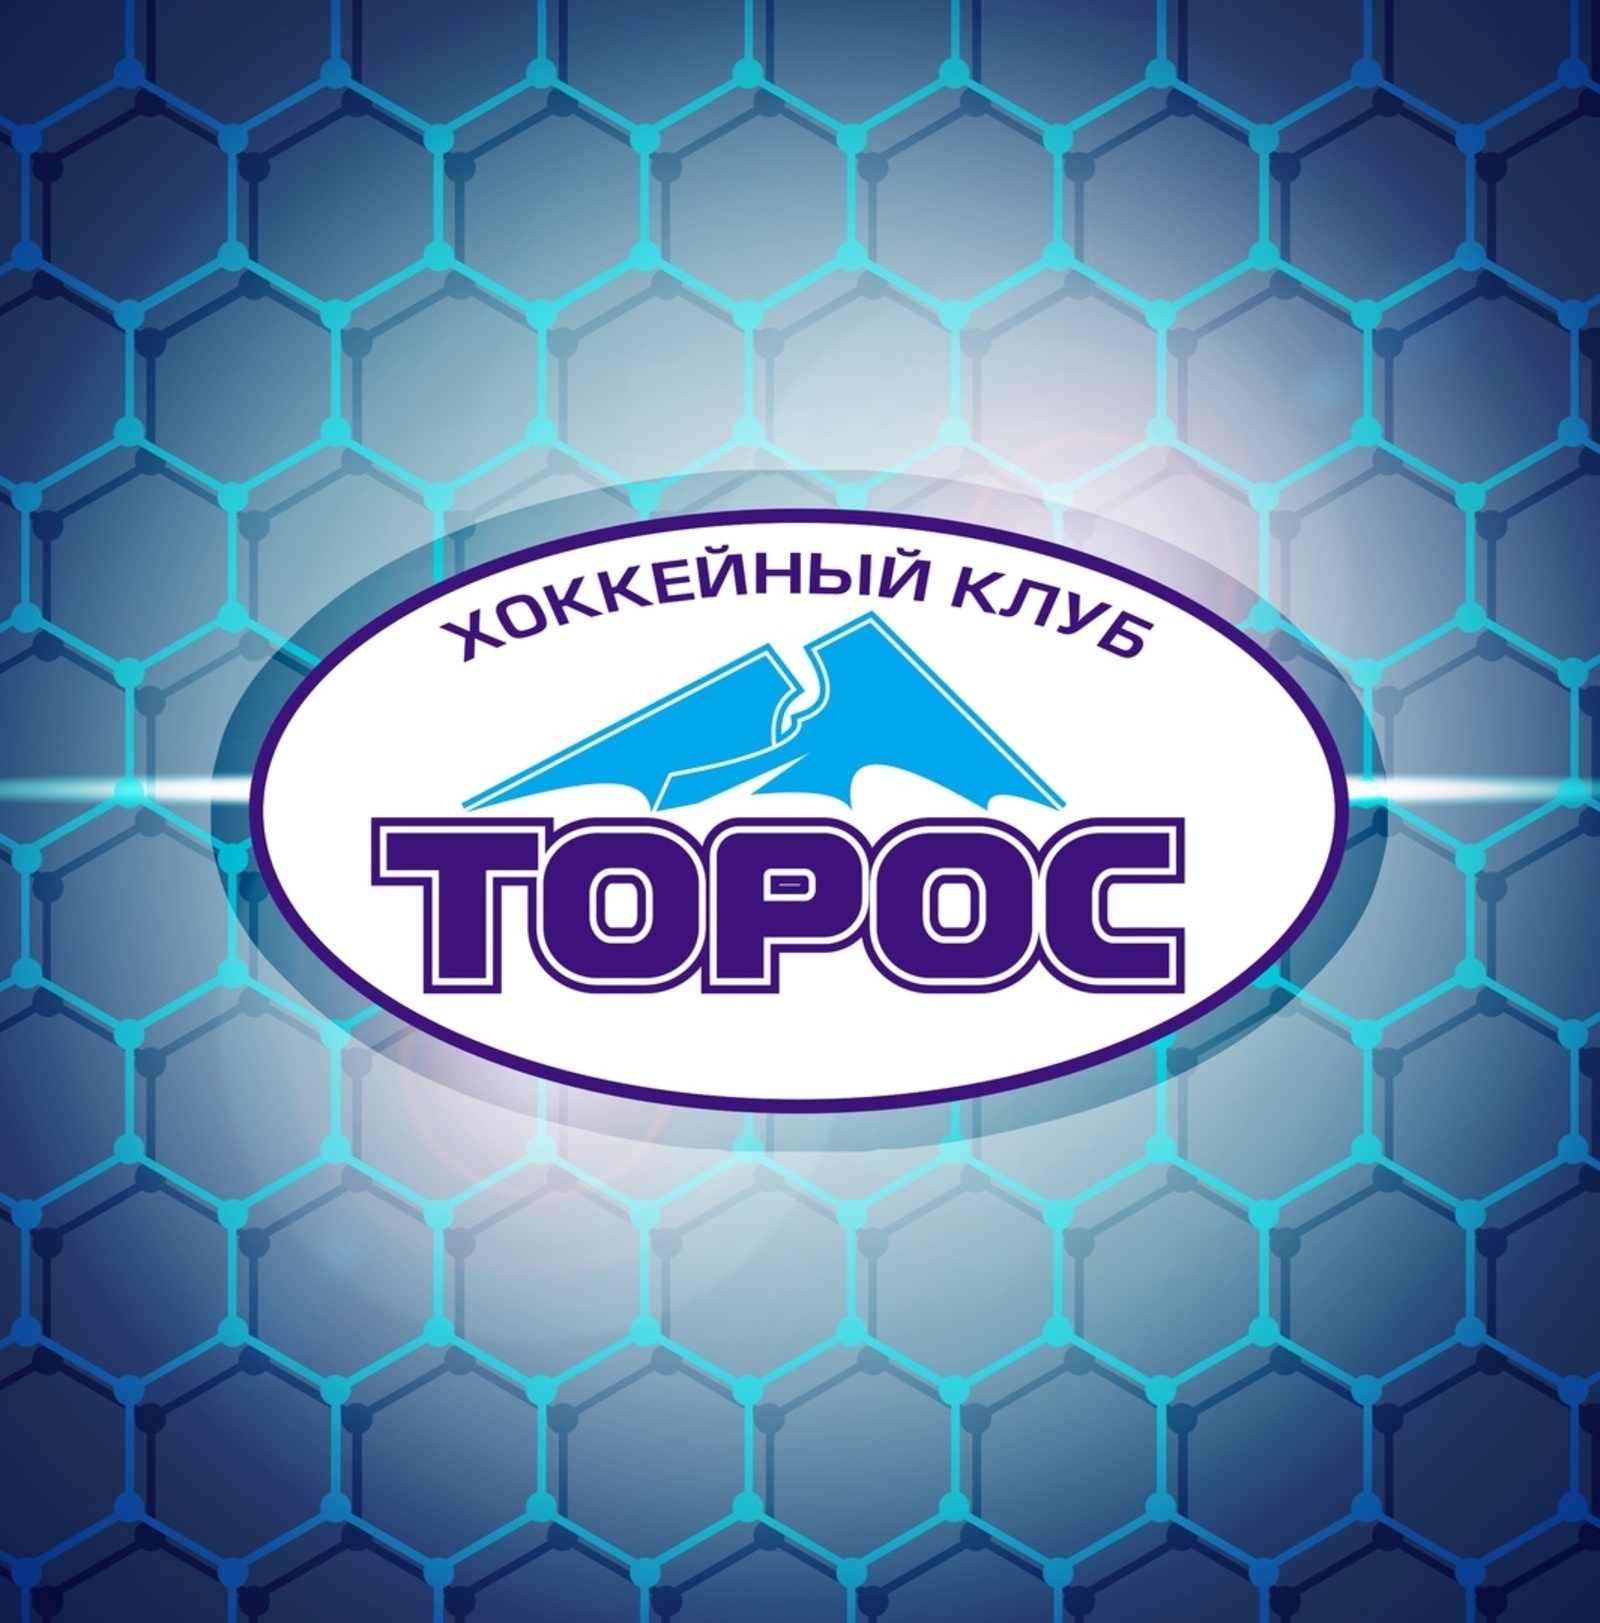 «Торос» прервал победную серию на отметке 11 матчей